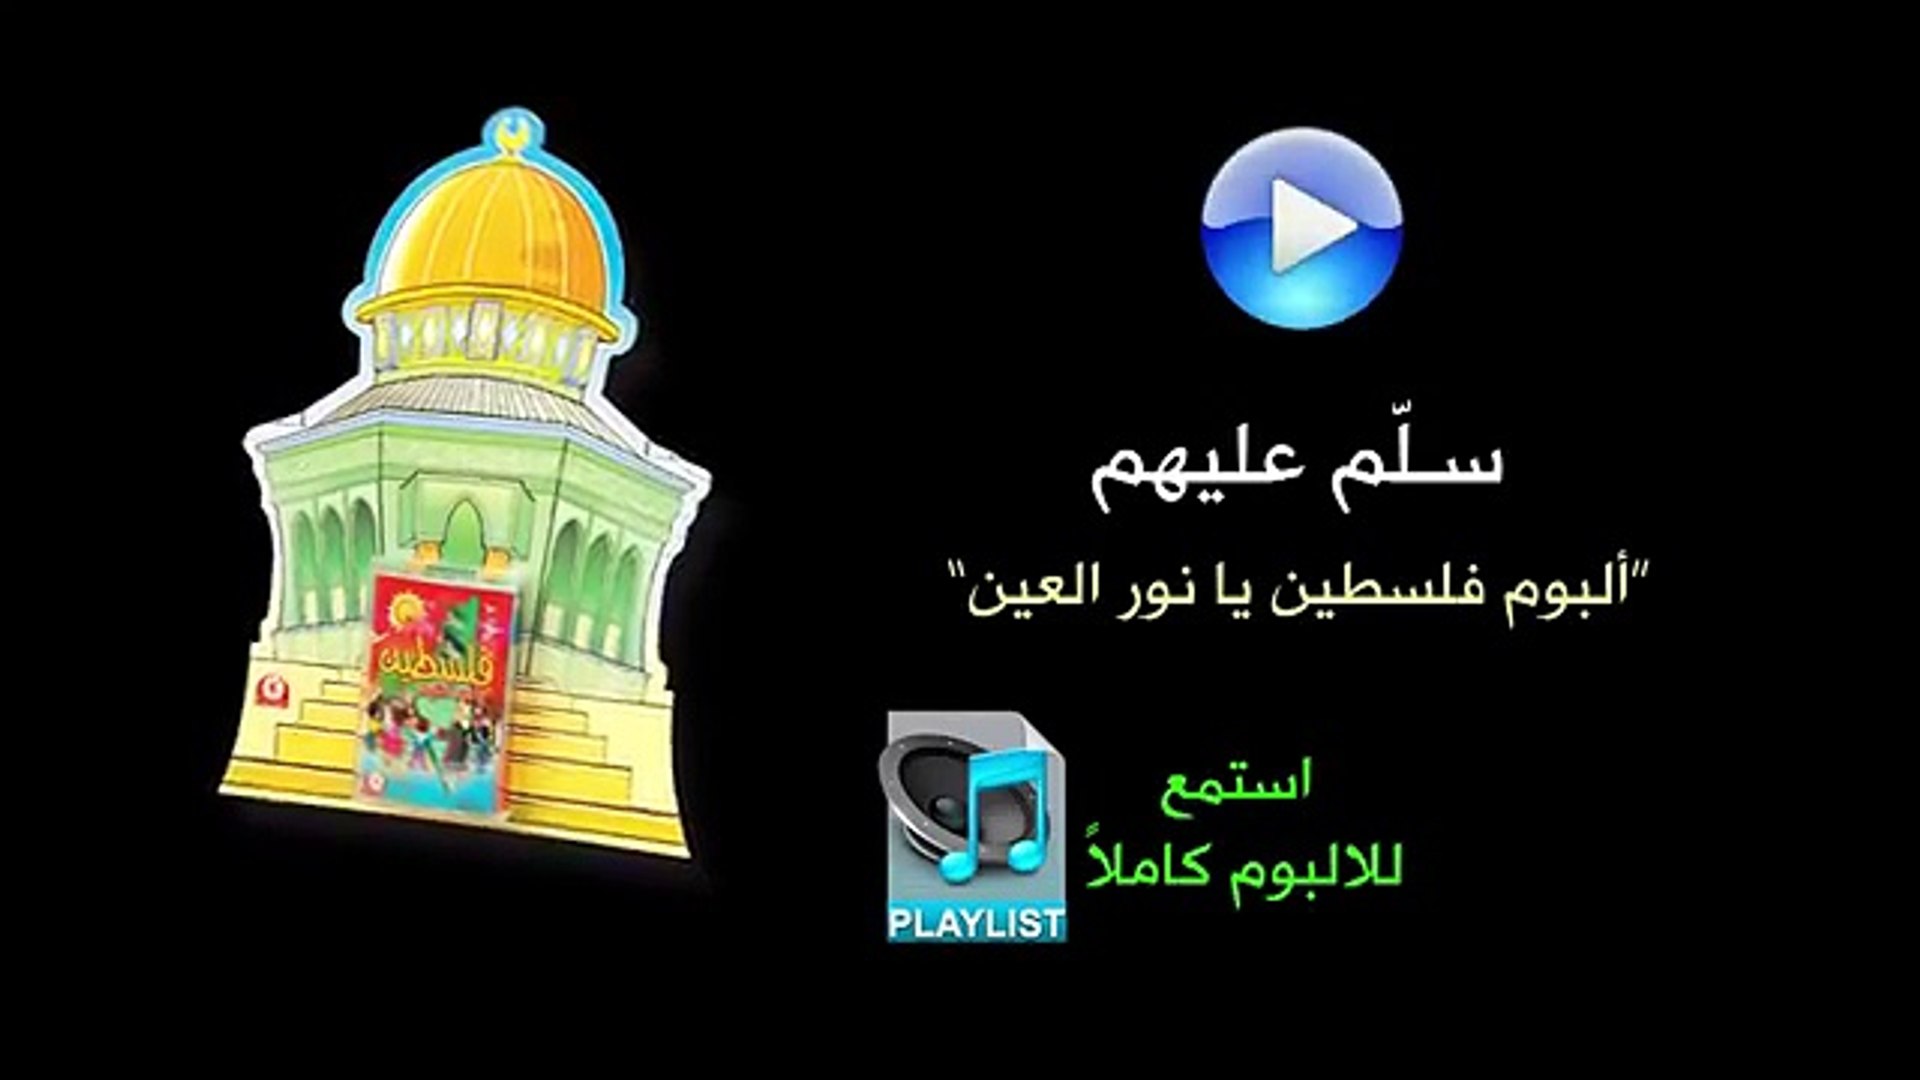 ألبوم فلسطين يا نور العين by Toyor Al janah - Dailymotion